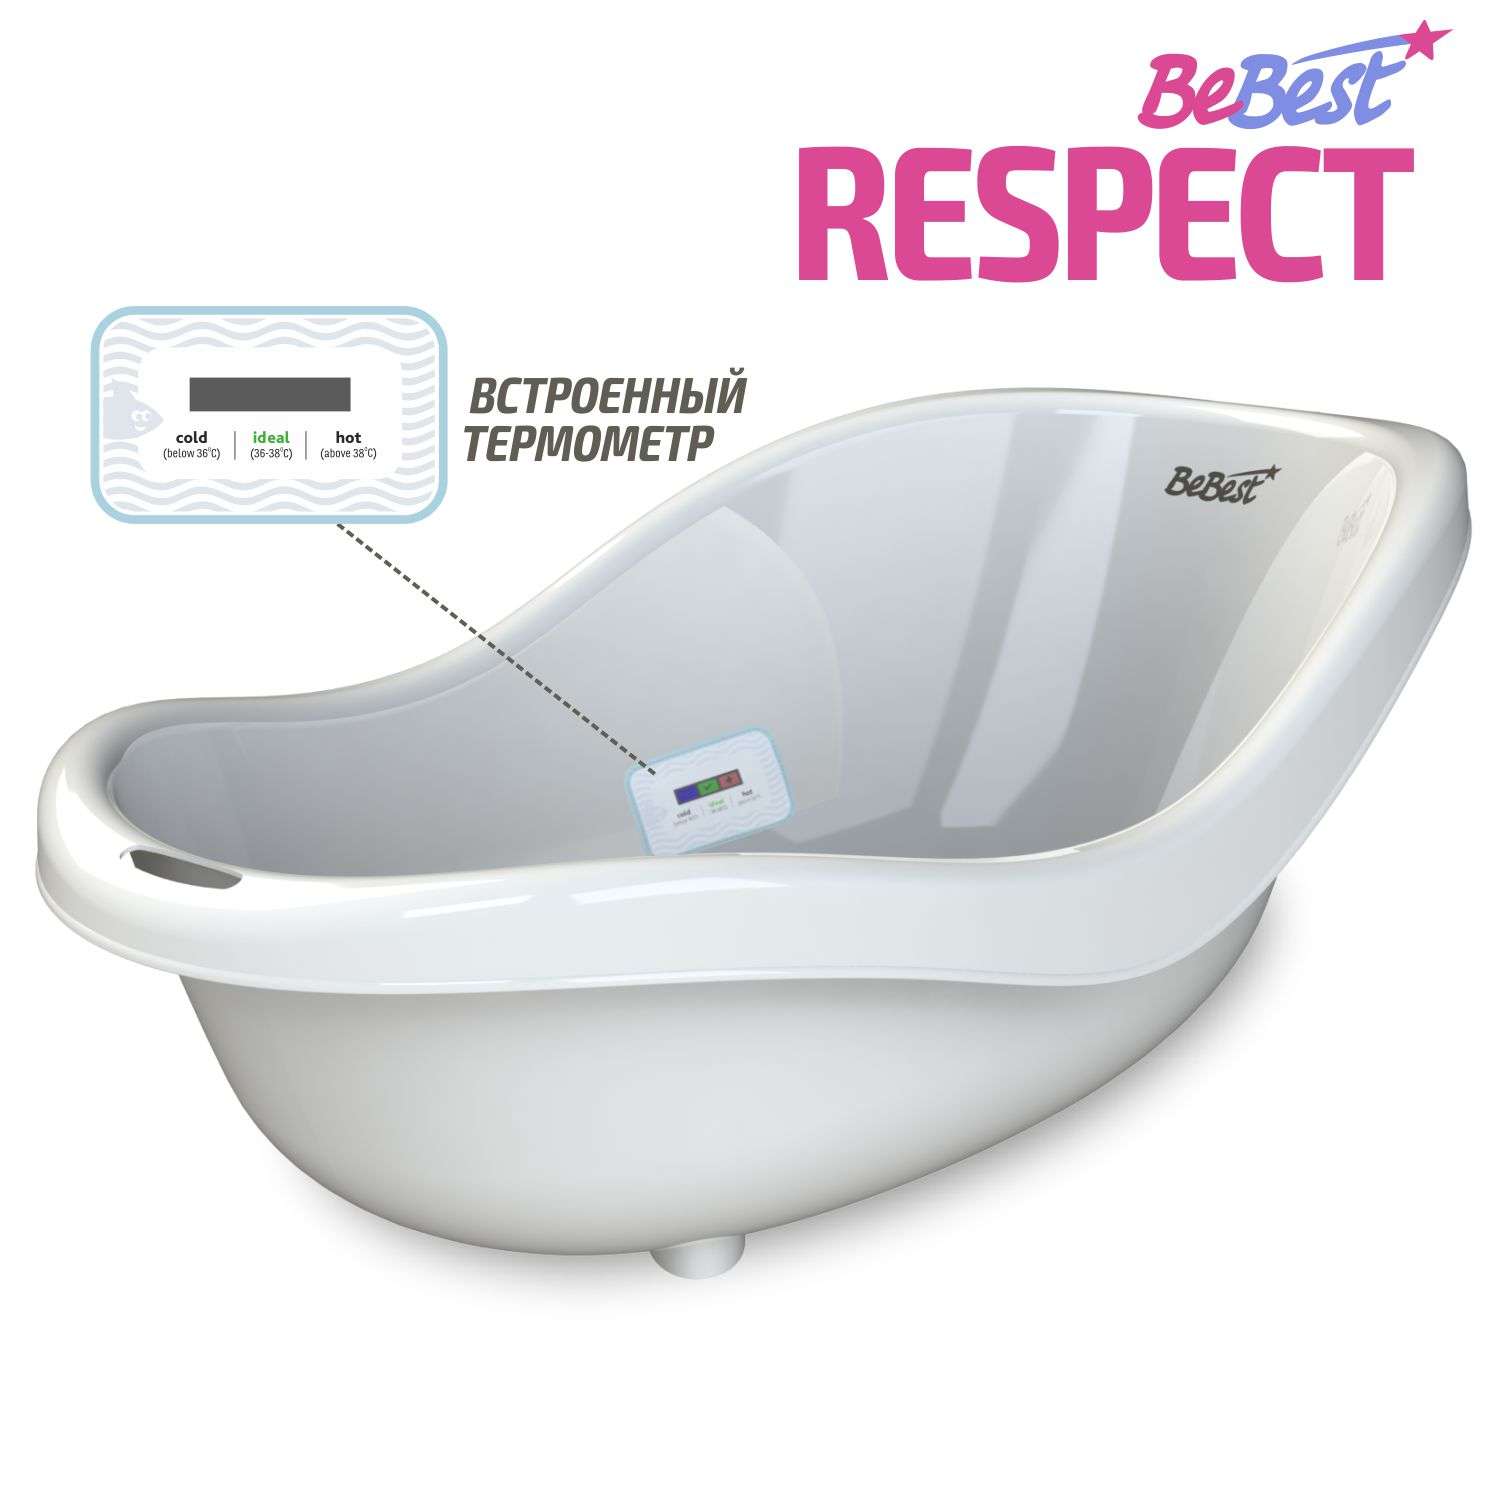 Ванночка для купания BeBest Respect с термометром белый - фото 1